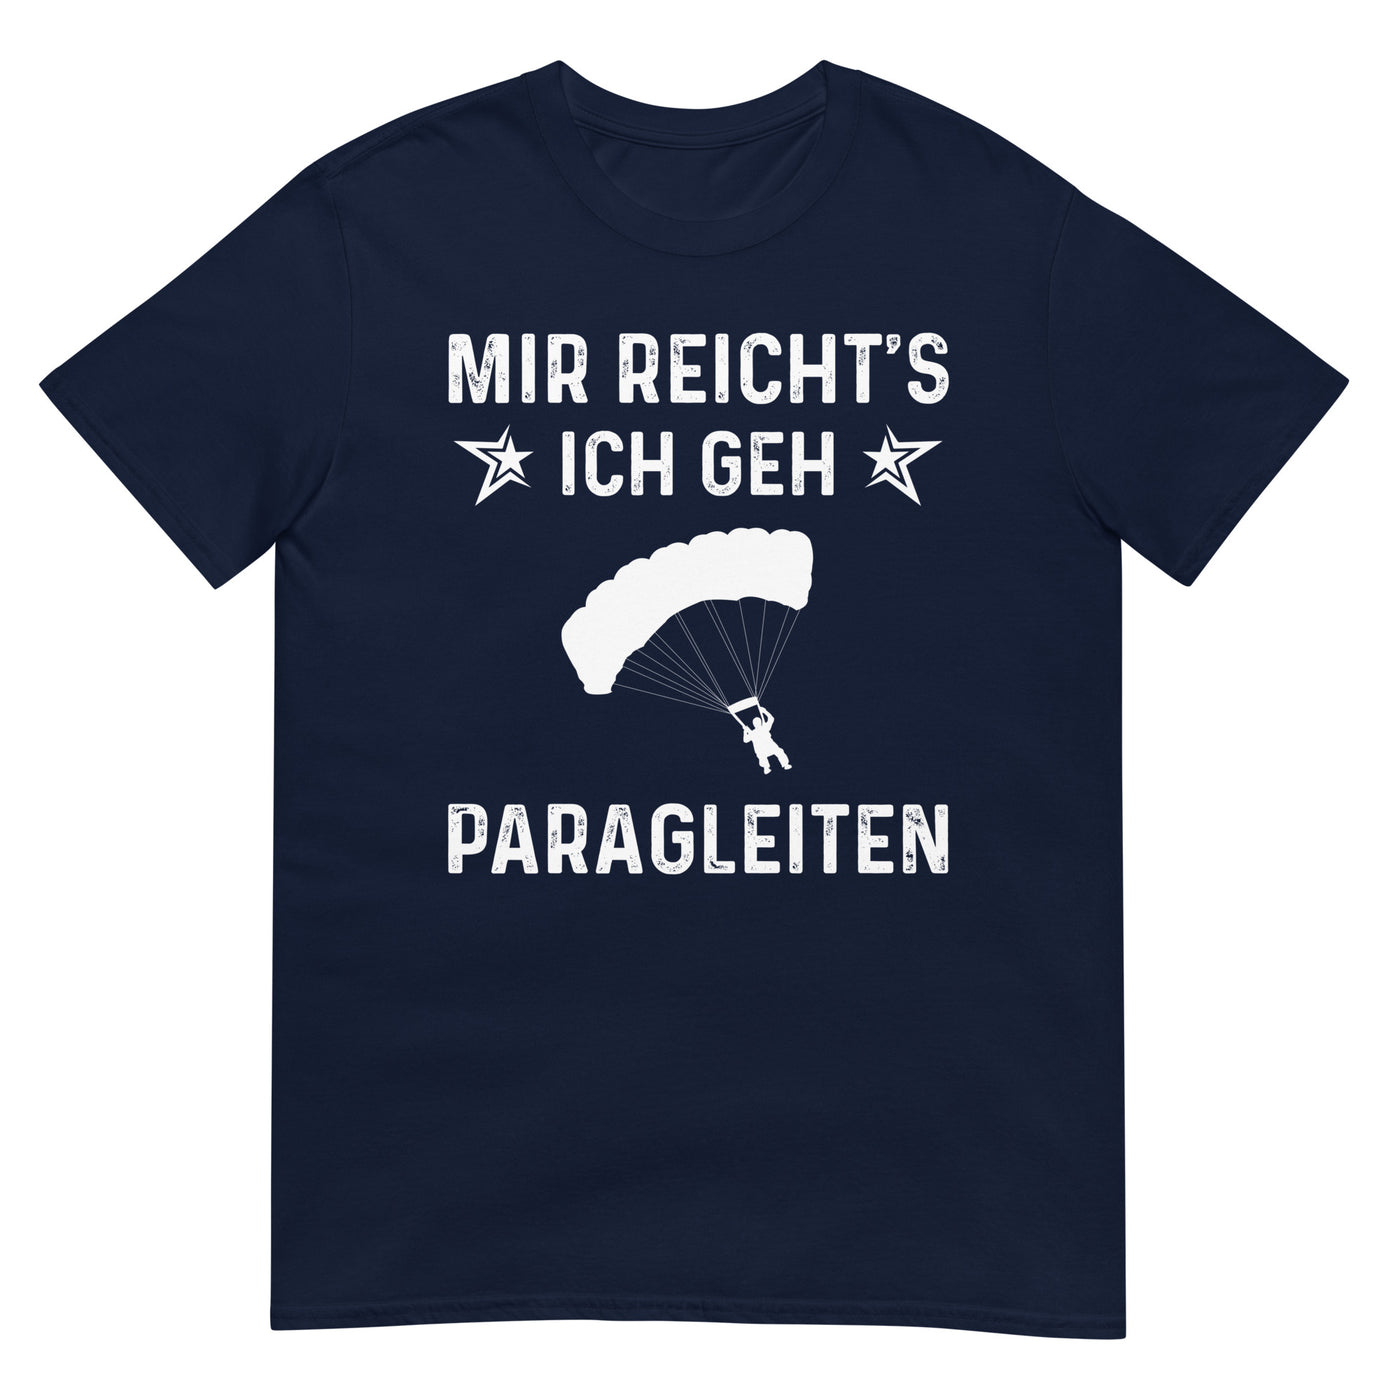 Mir Reicht's Ich Gen Paragleiten - T-Shirt (Unisex) berge xxx yyy zzz Navy